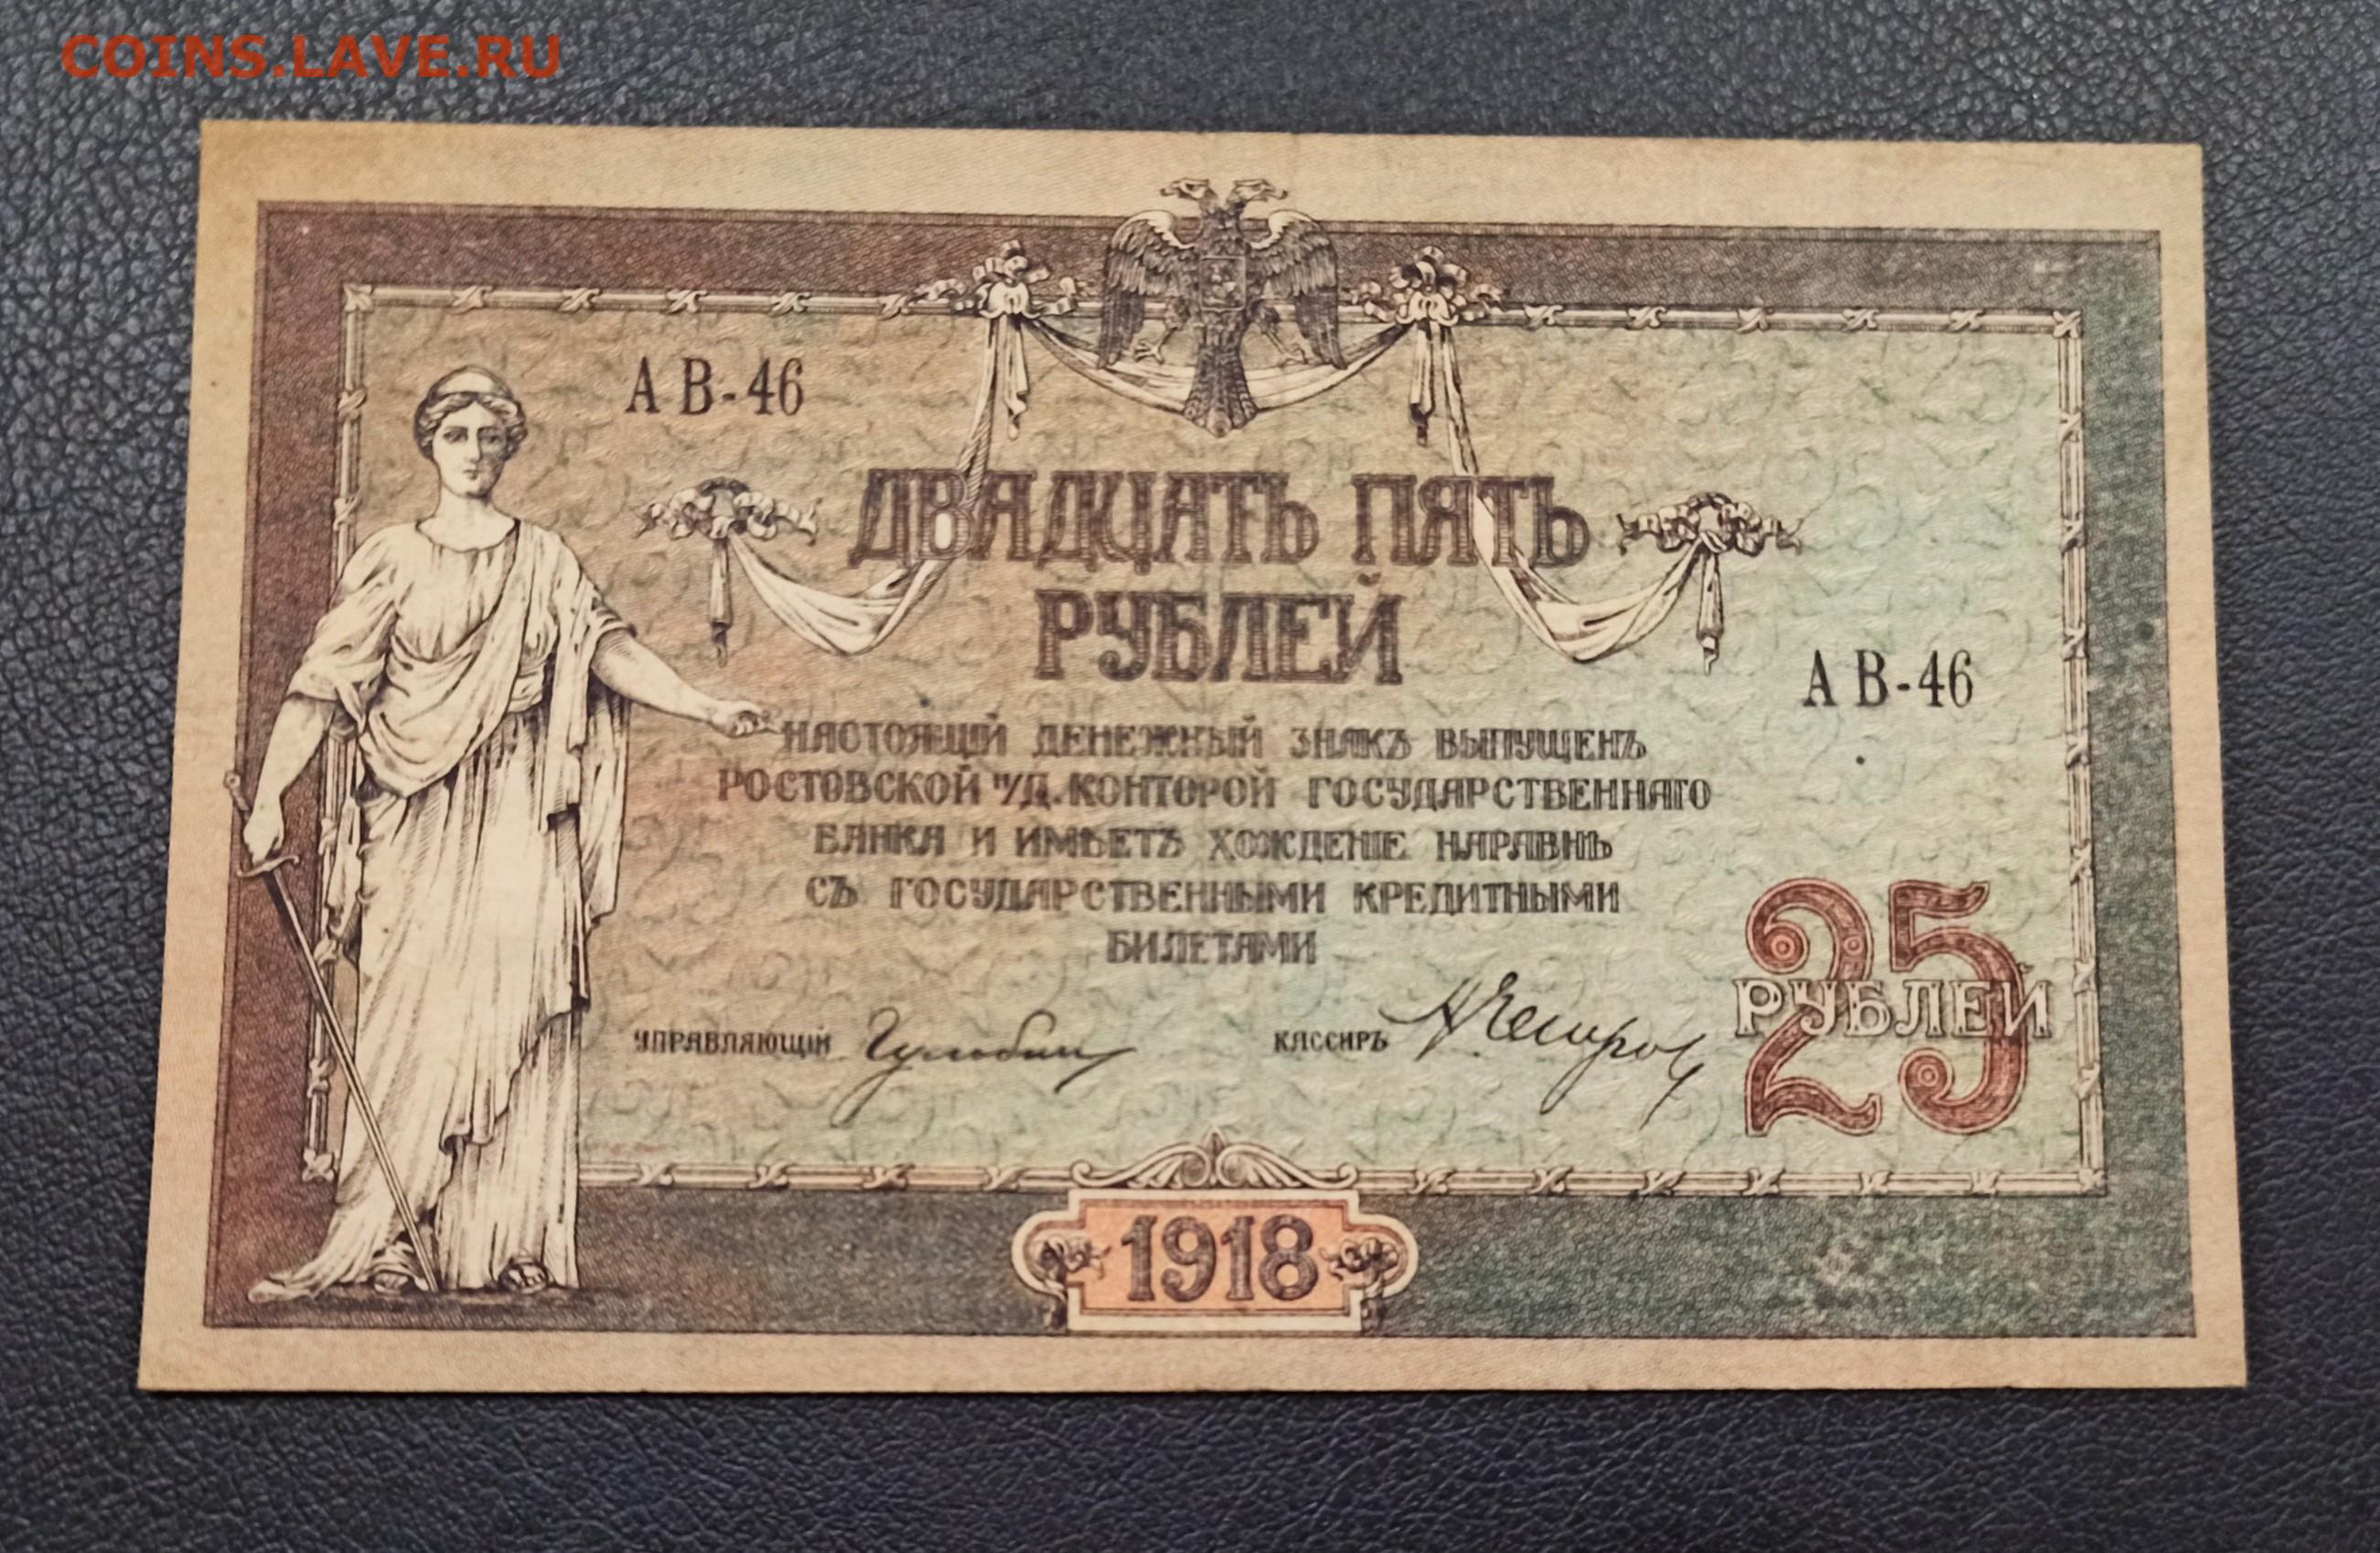 Двести пятьдесят первый. 25 Рублей 1918. Бумажные деньги России 1918 года. Двести пятьдесят рублей 1918. Фото 25 рублей 1918 года.